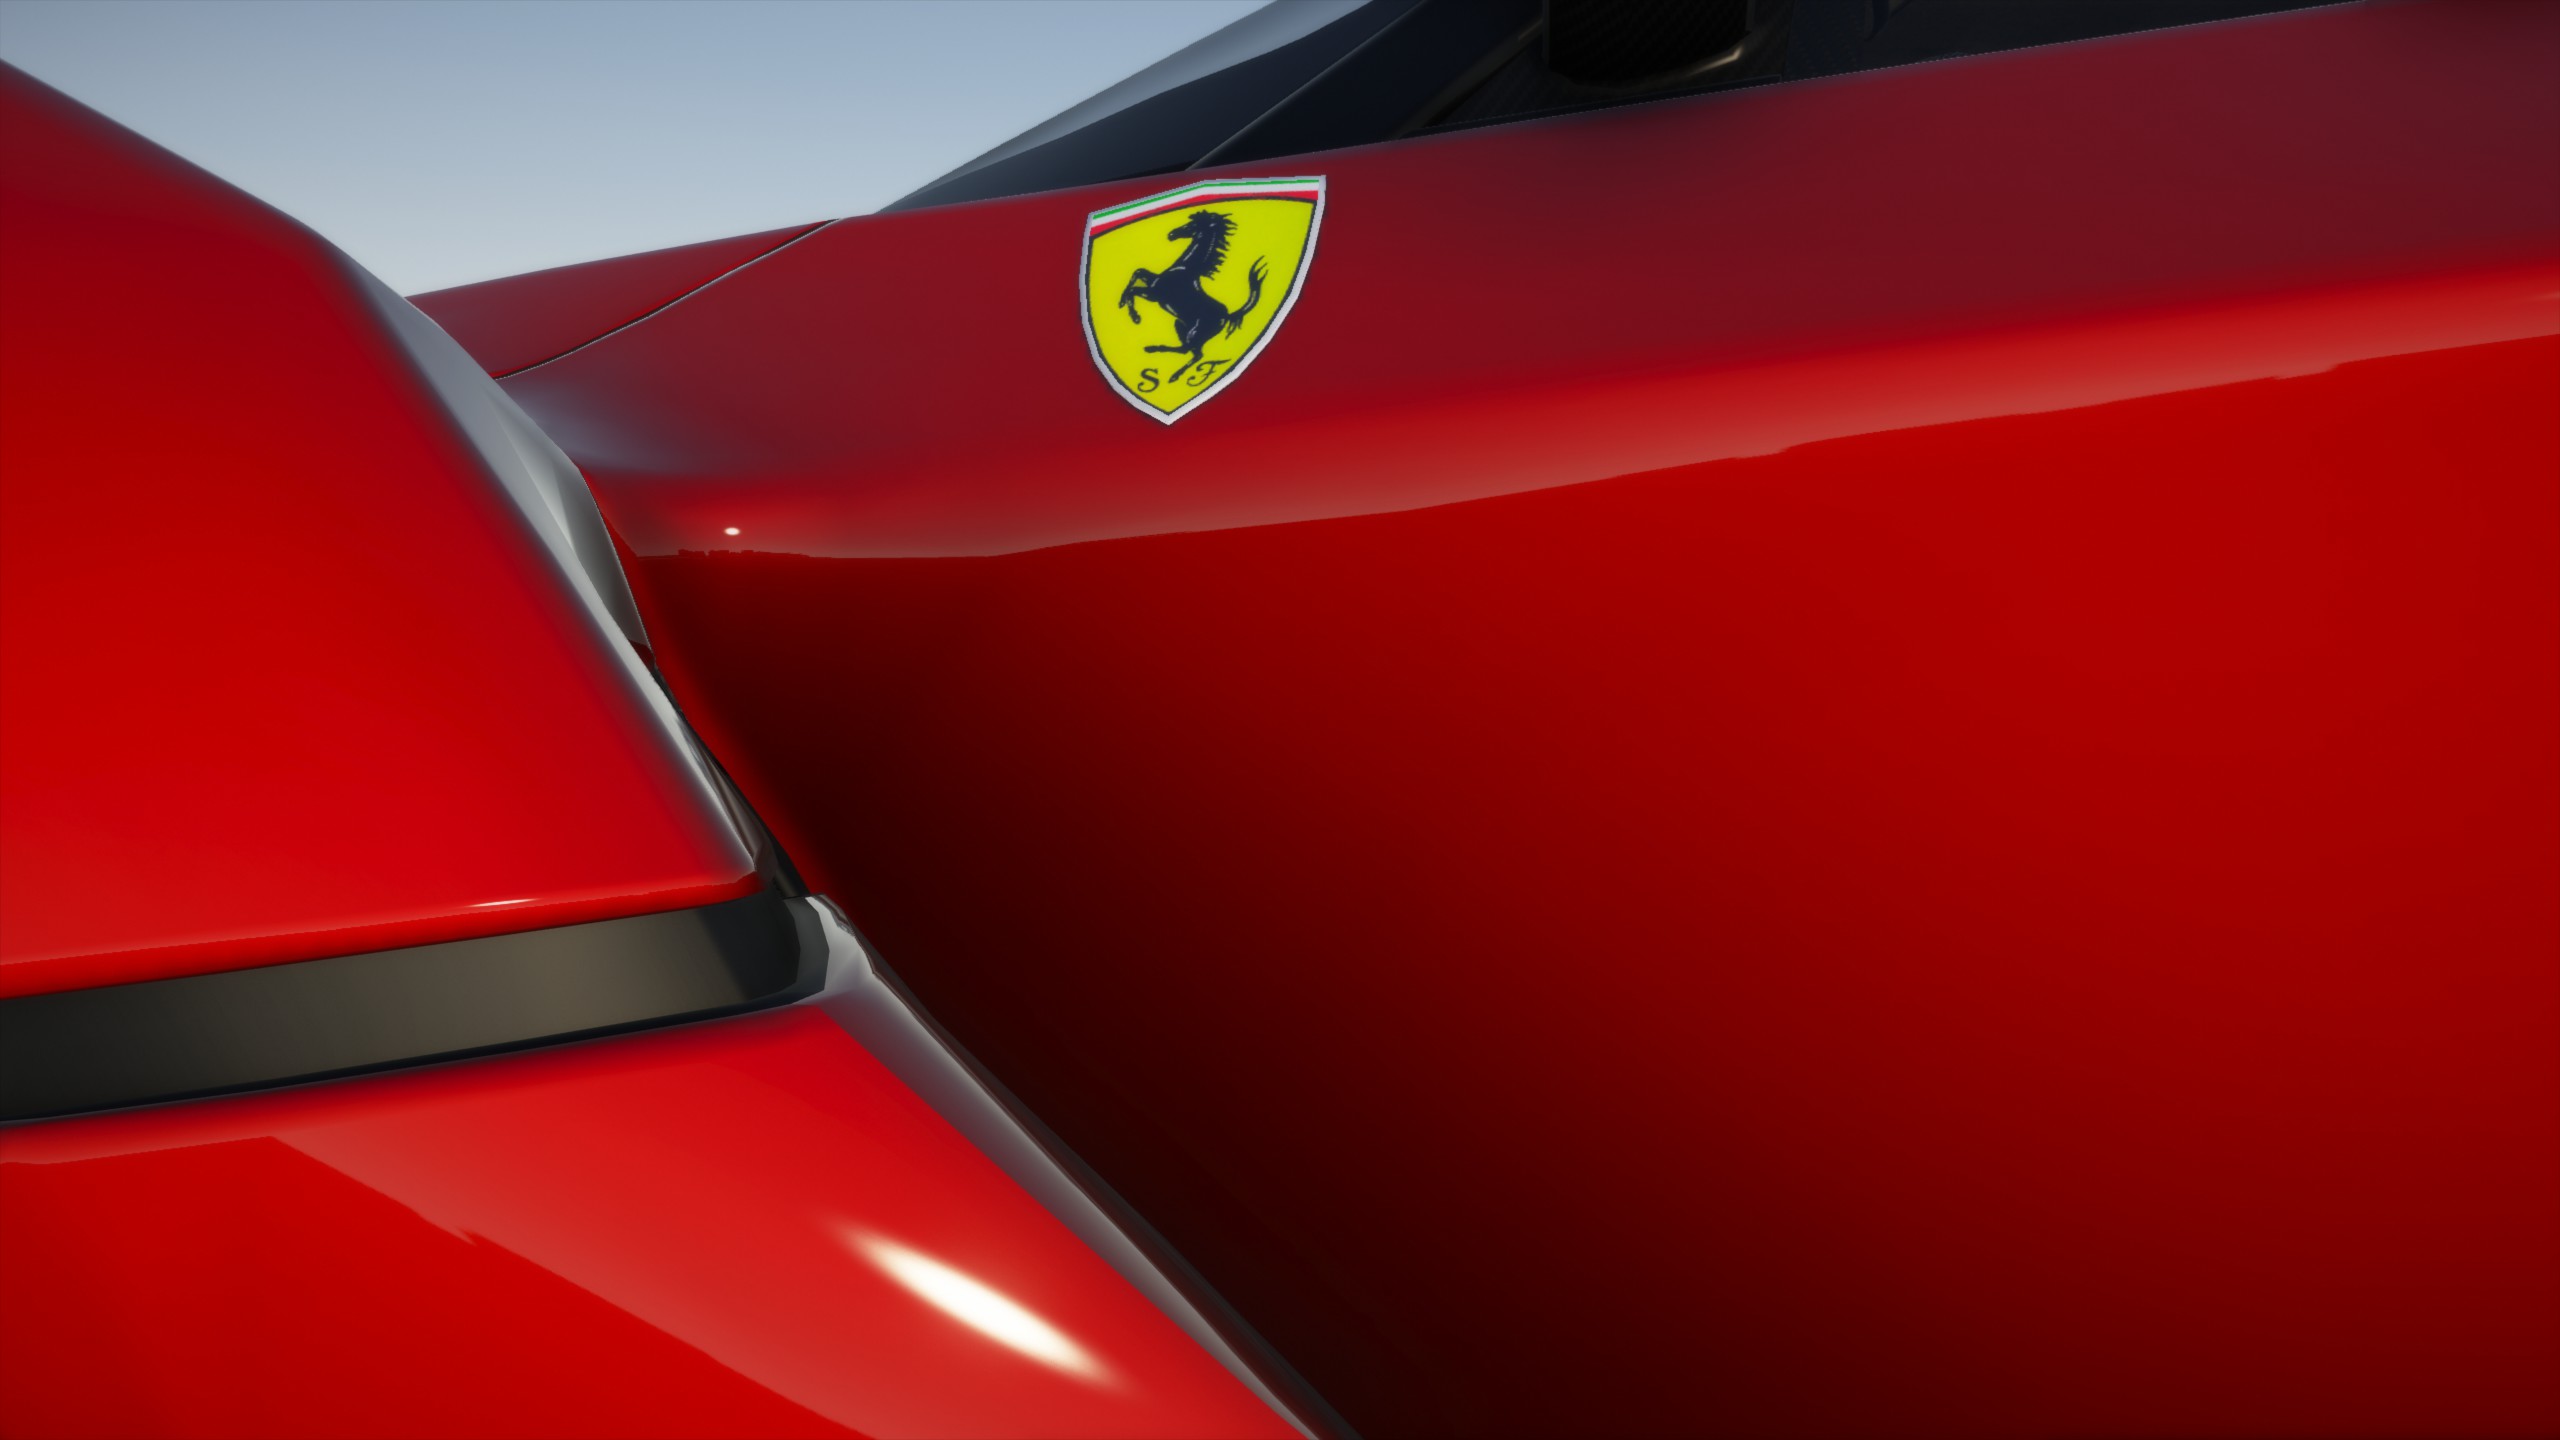 General 2560x1440 Grand Theft Auto V Ferrari CGI car closeup